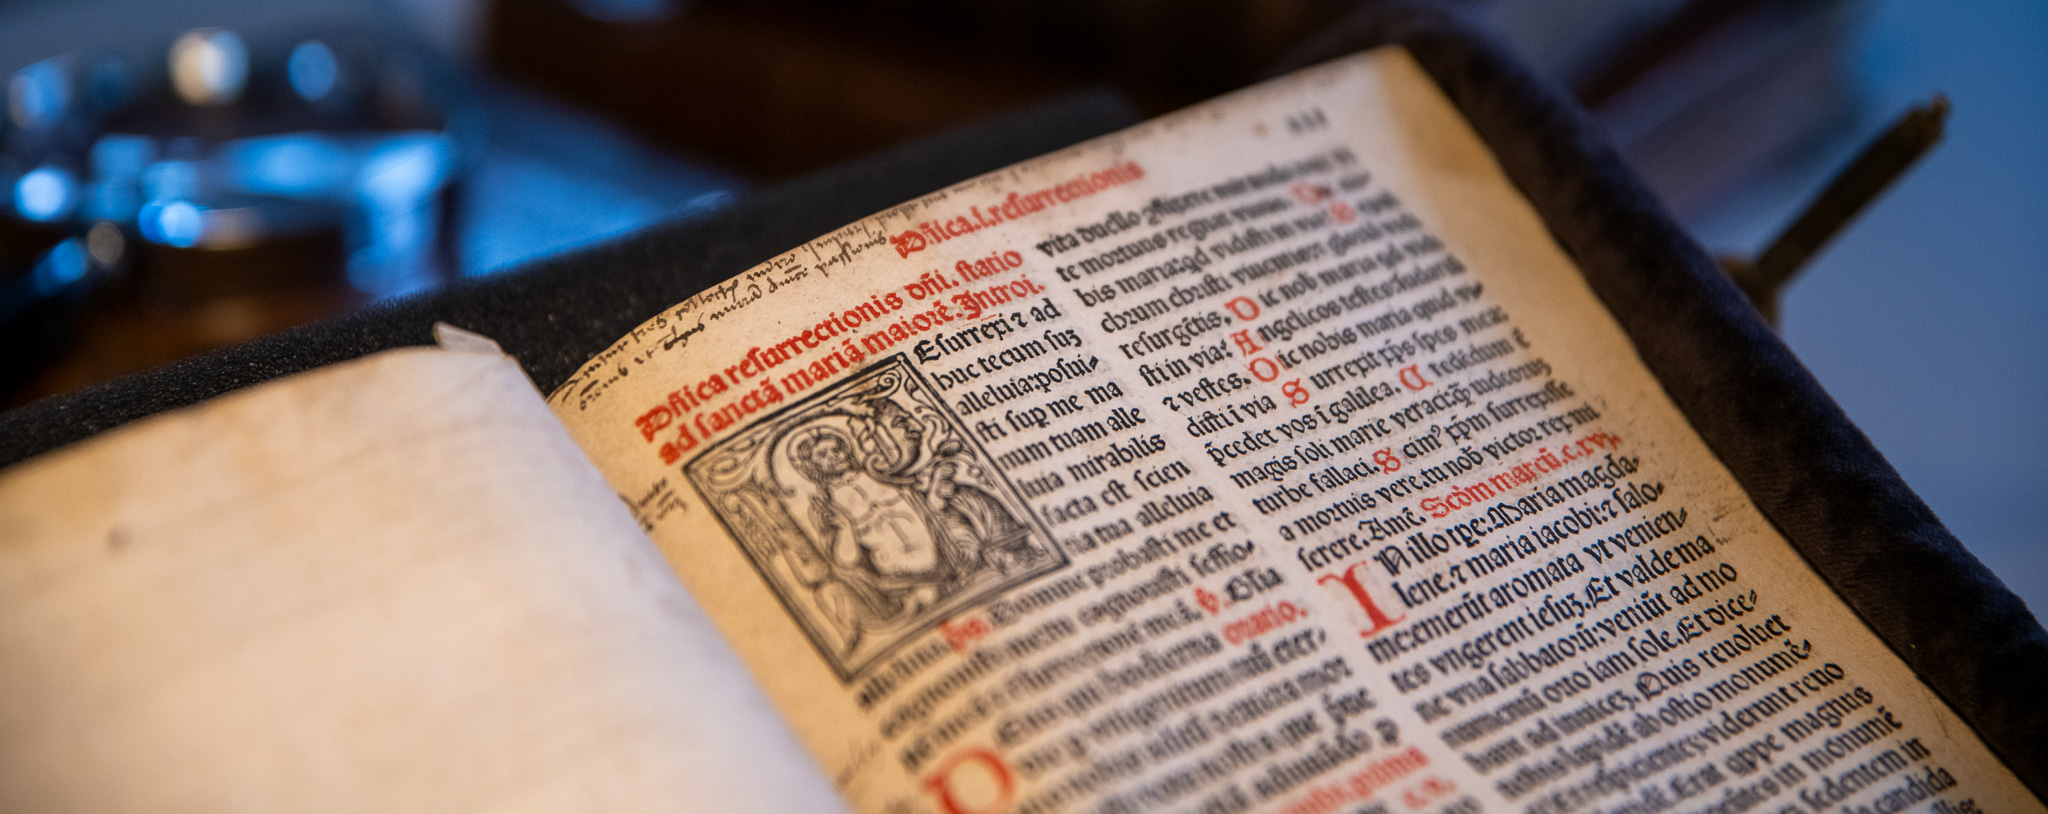 Missale (Messbuch) 16. Jahrhundert, Liturgie Ostersonntag